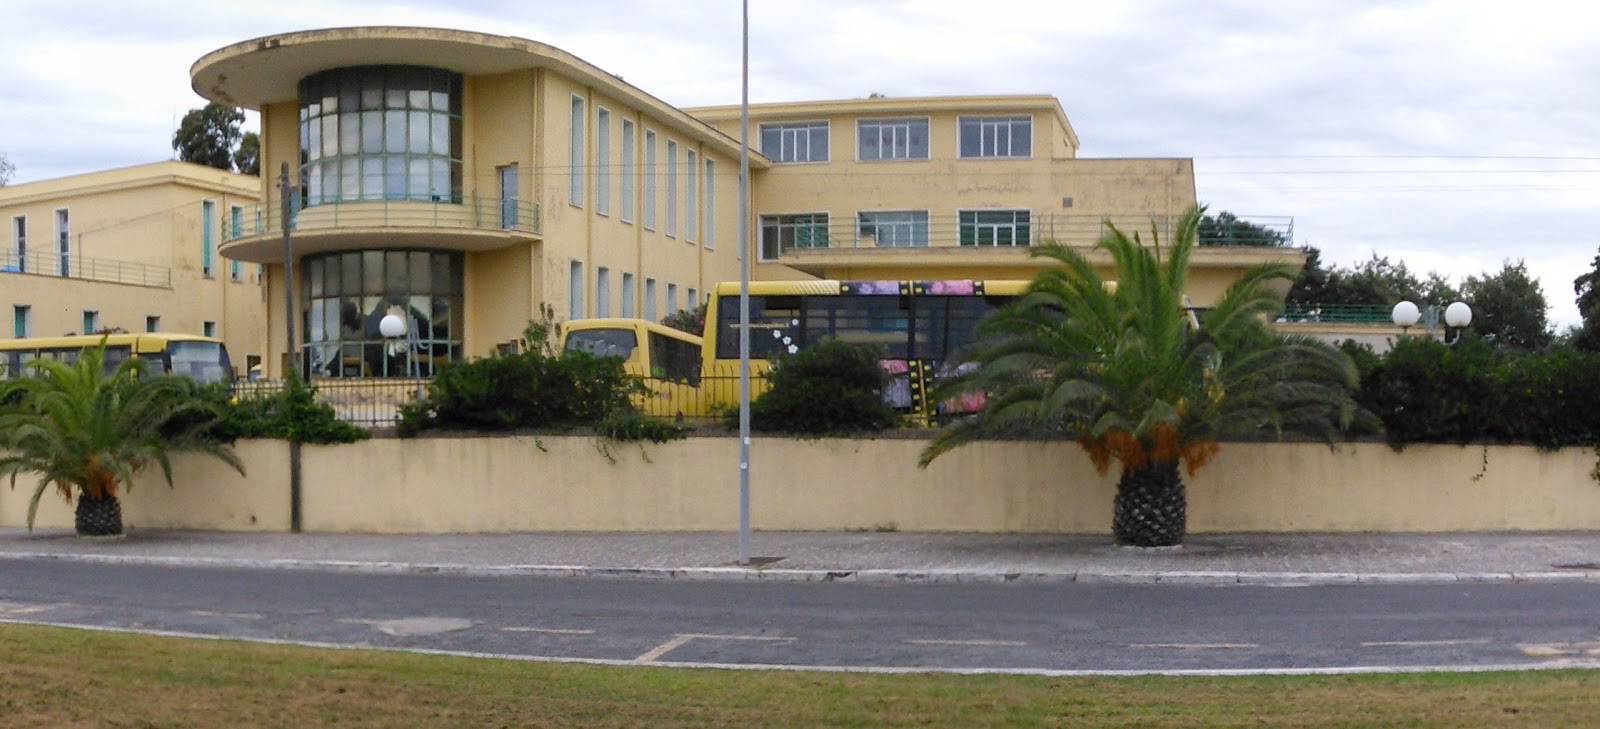 Realizzazione di una Casa della Salute a Sabaudia: il Consiglio dice ‘si’ alla delibera di richiesta alla Regione